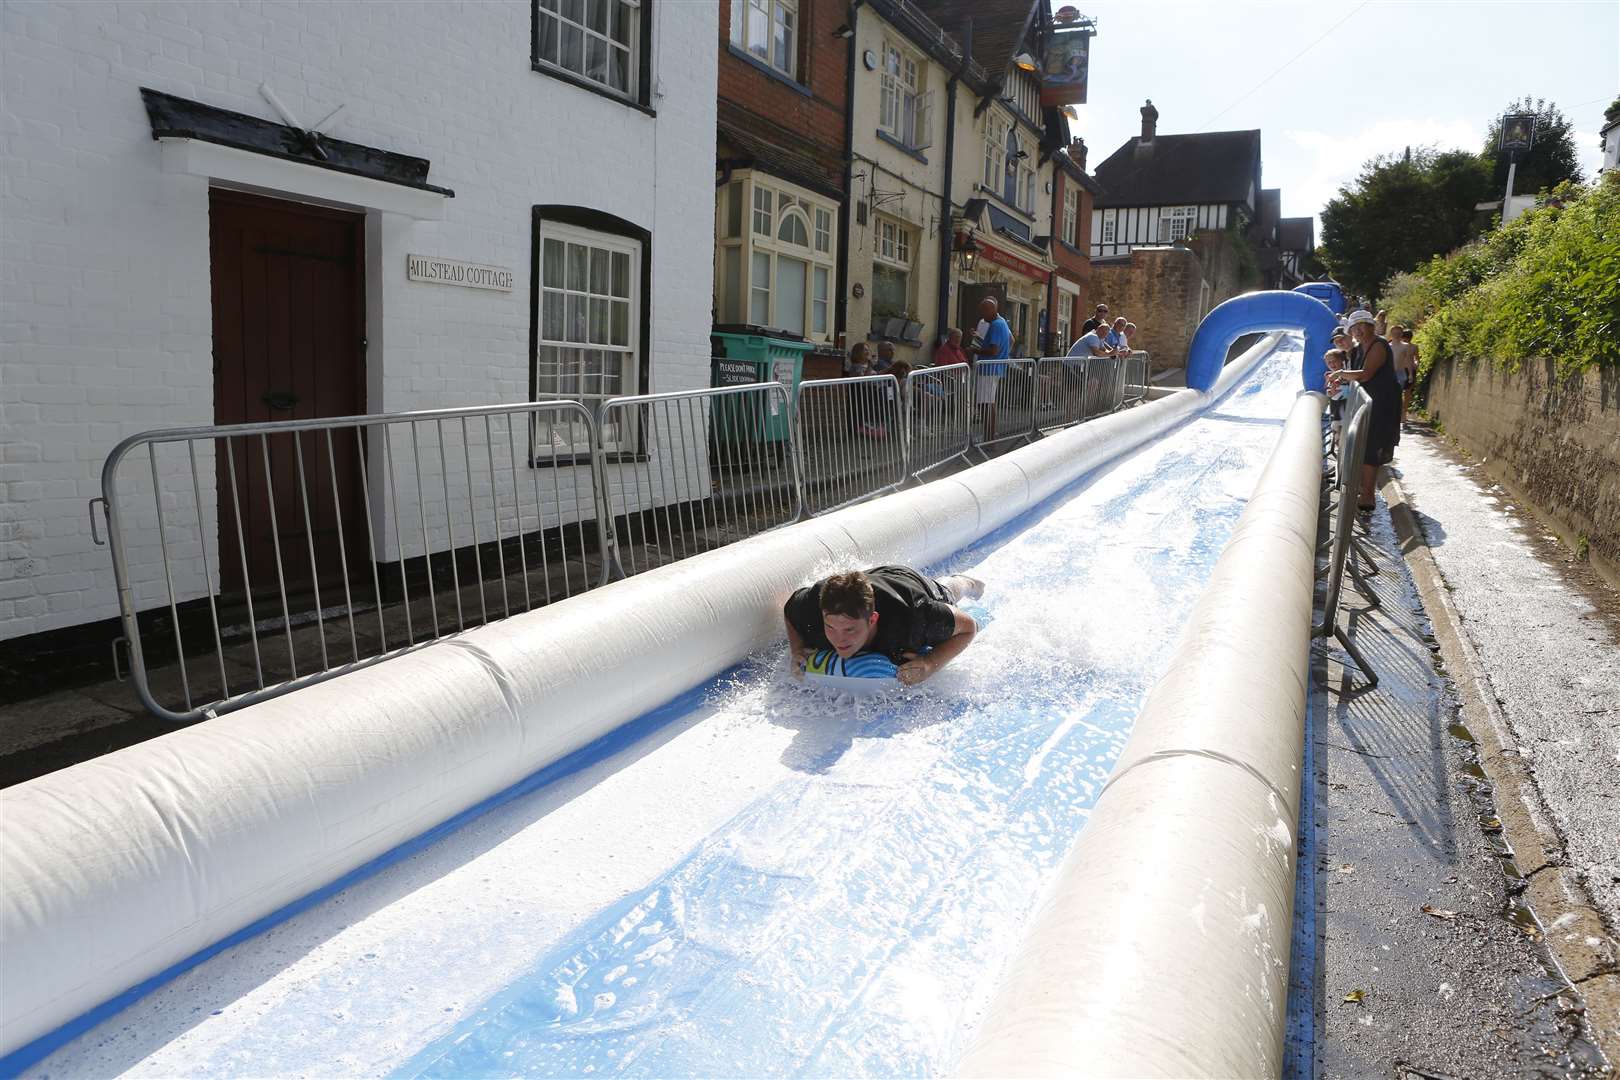 Sutton Valence's super water slide